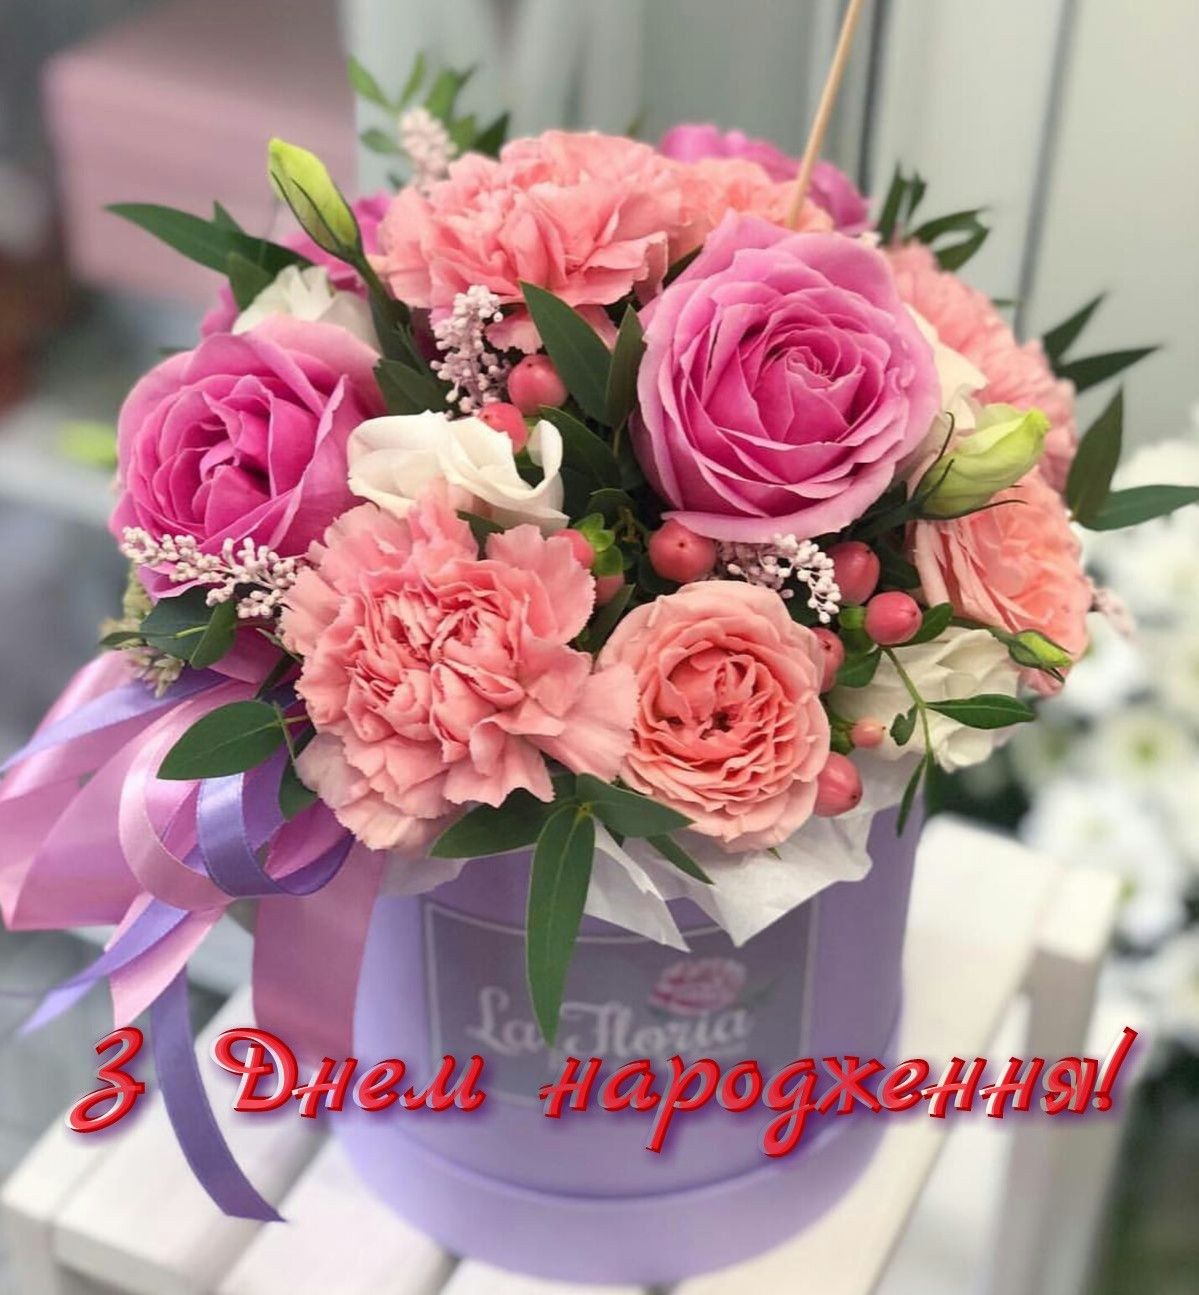 Привітання з днем народження дружині українською мовою
